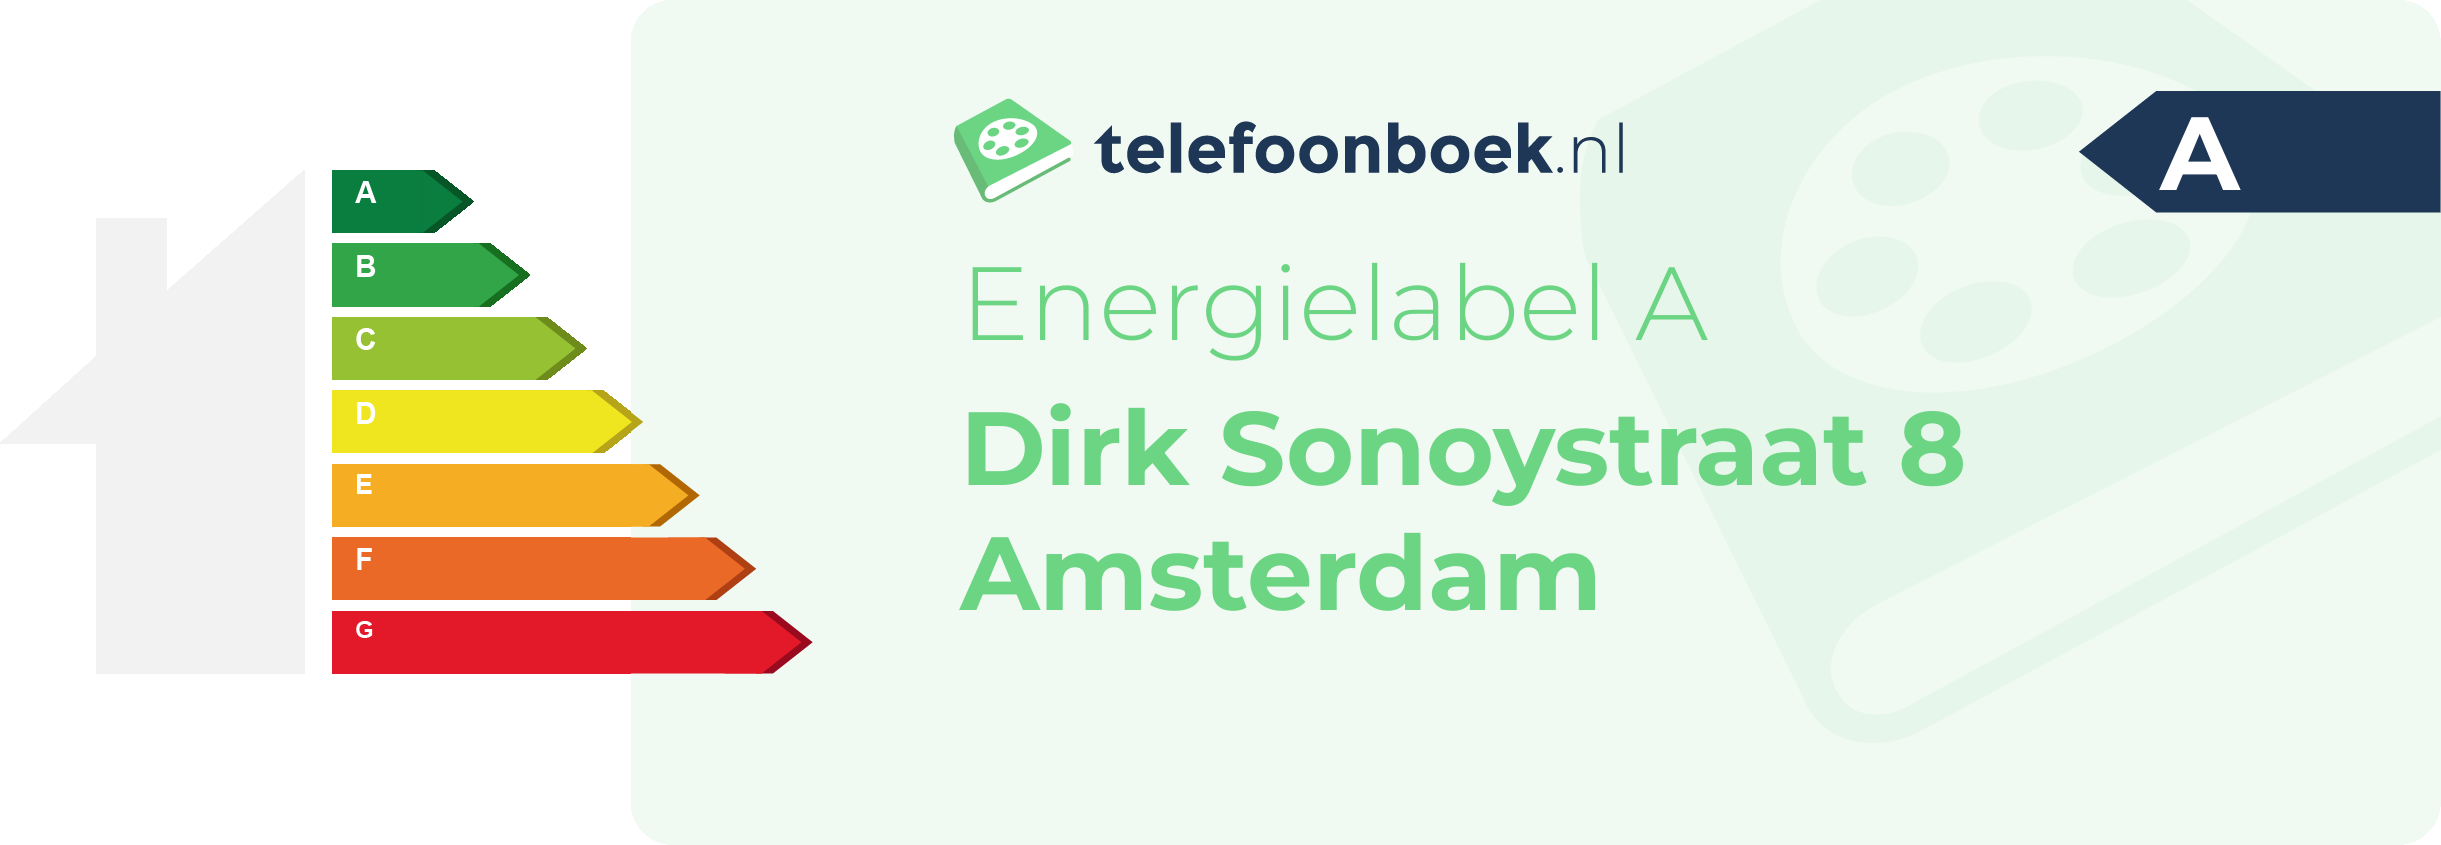 Energielabel Dirk Sonoystraat 8 Amsterdam